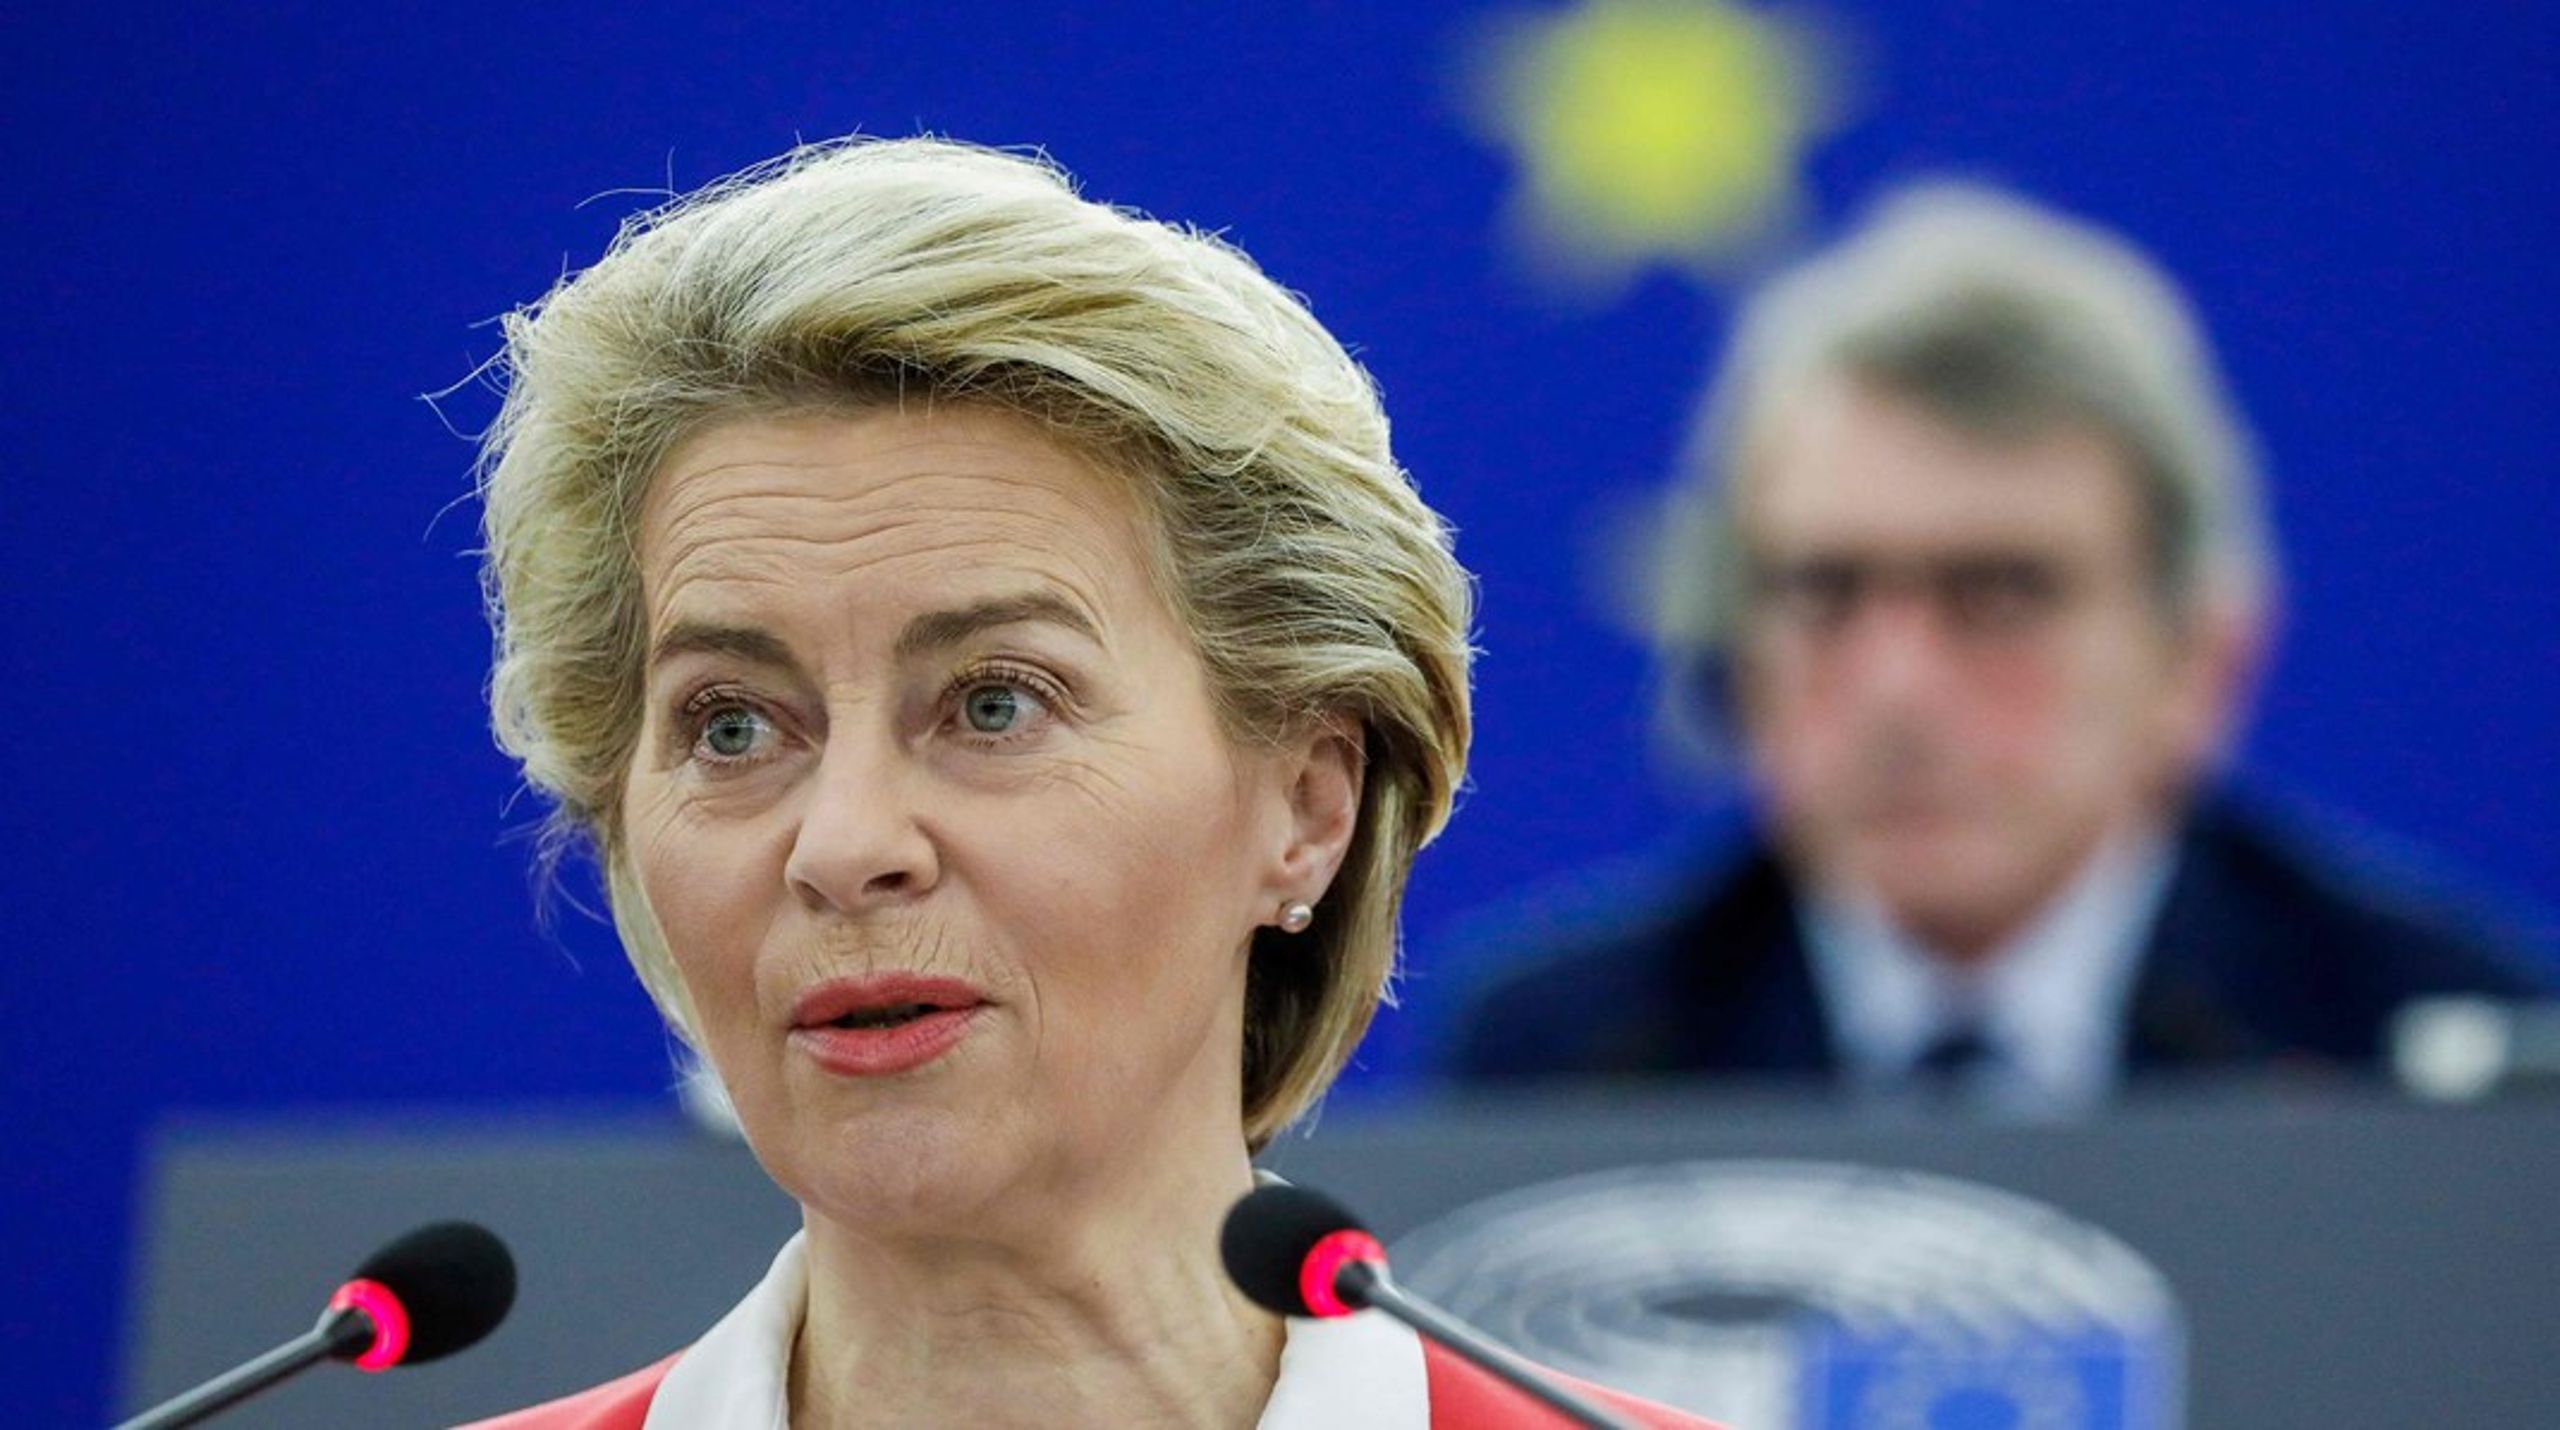 EU's ledelse risikerer at miste chancen for at genvinde borgernes tillid, skriver Susi Dennison.